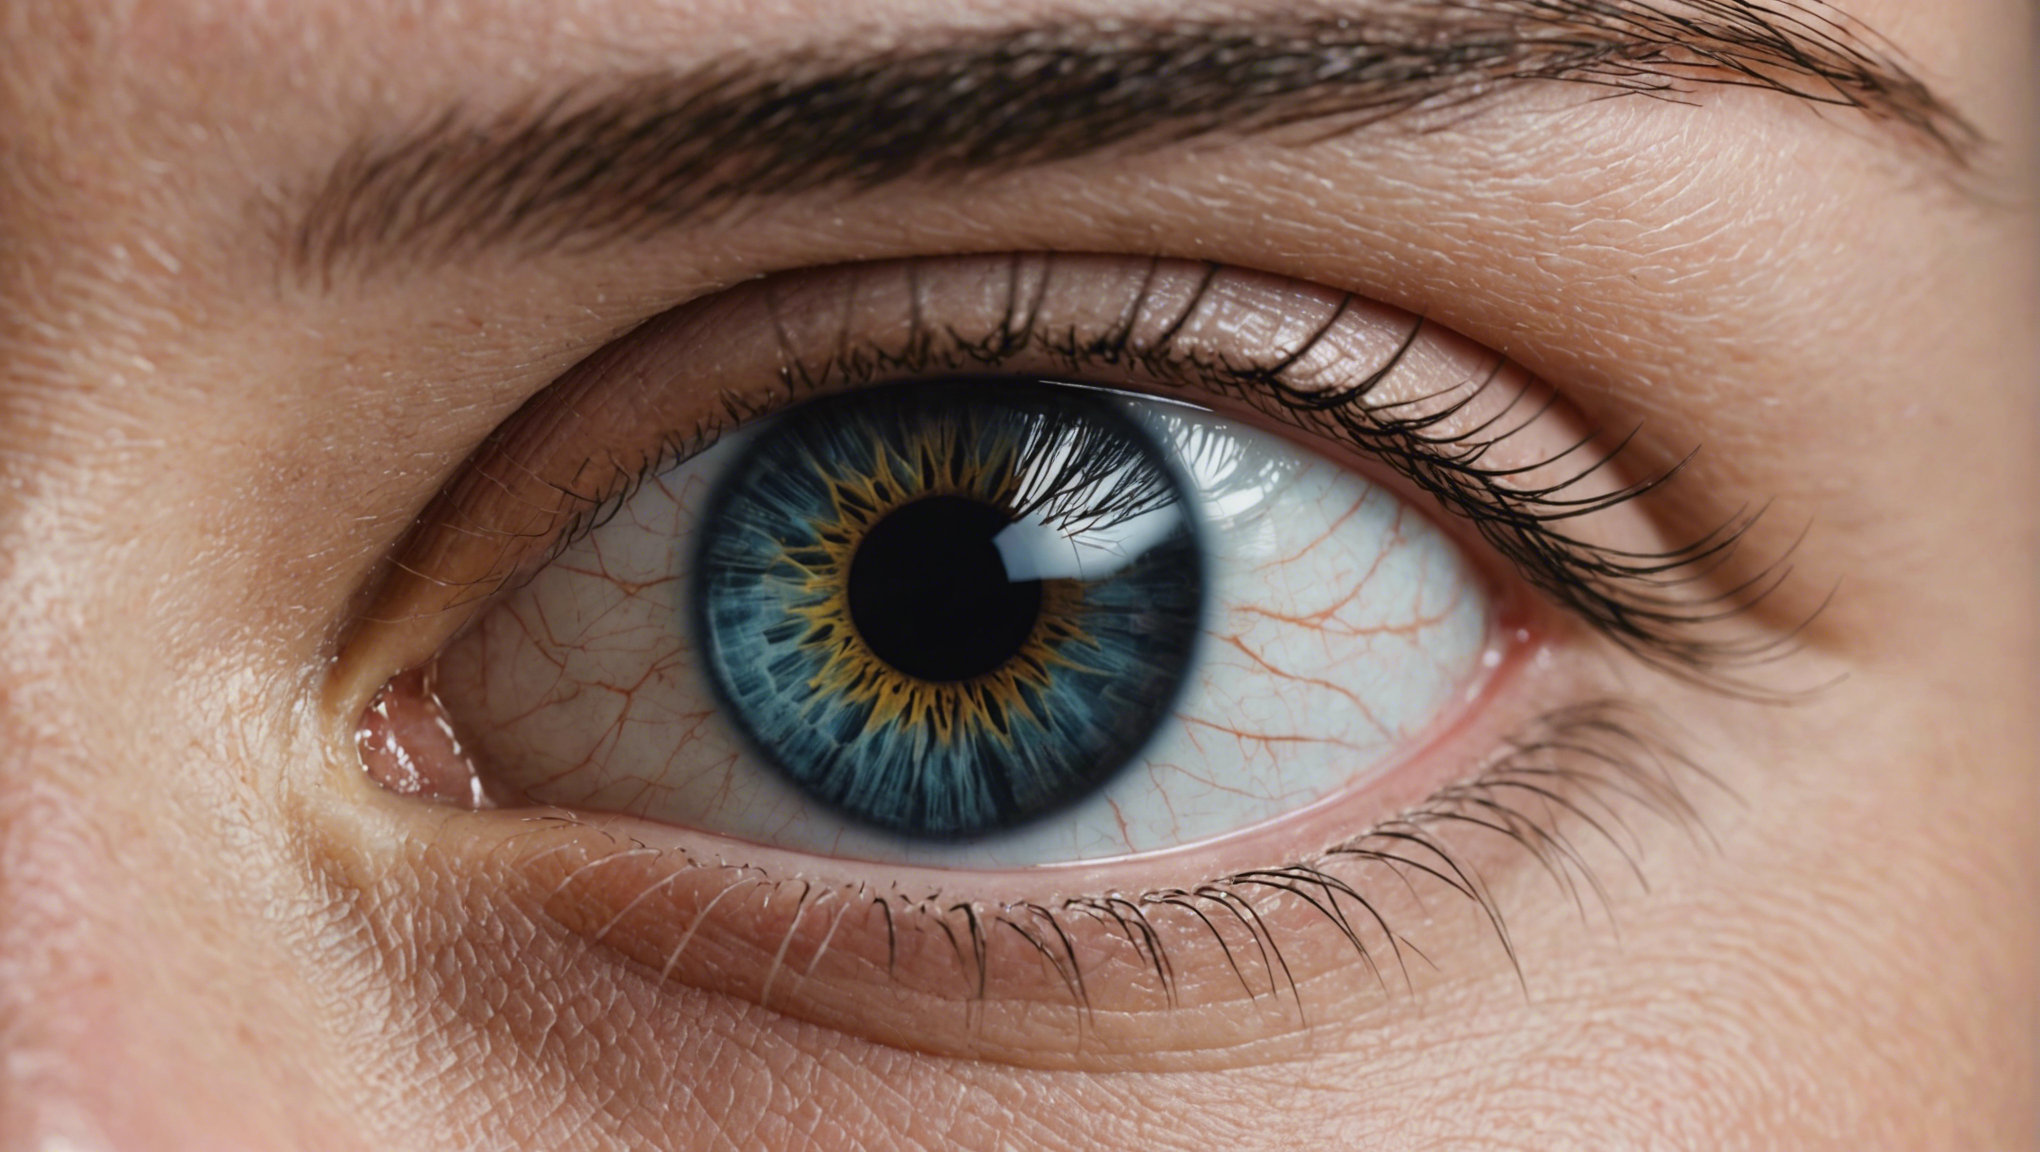 opération des yeux à angers : découvrez la solution pour retrouver une vision claire avec nos experts ophtalmologues